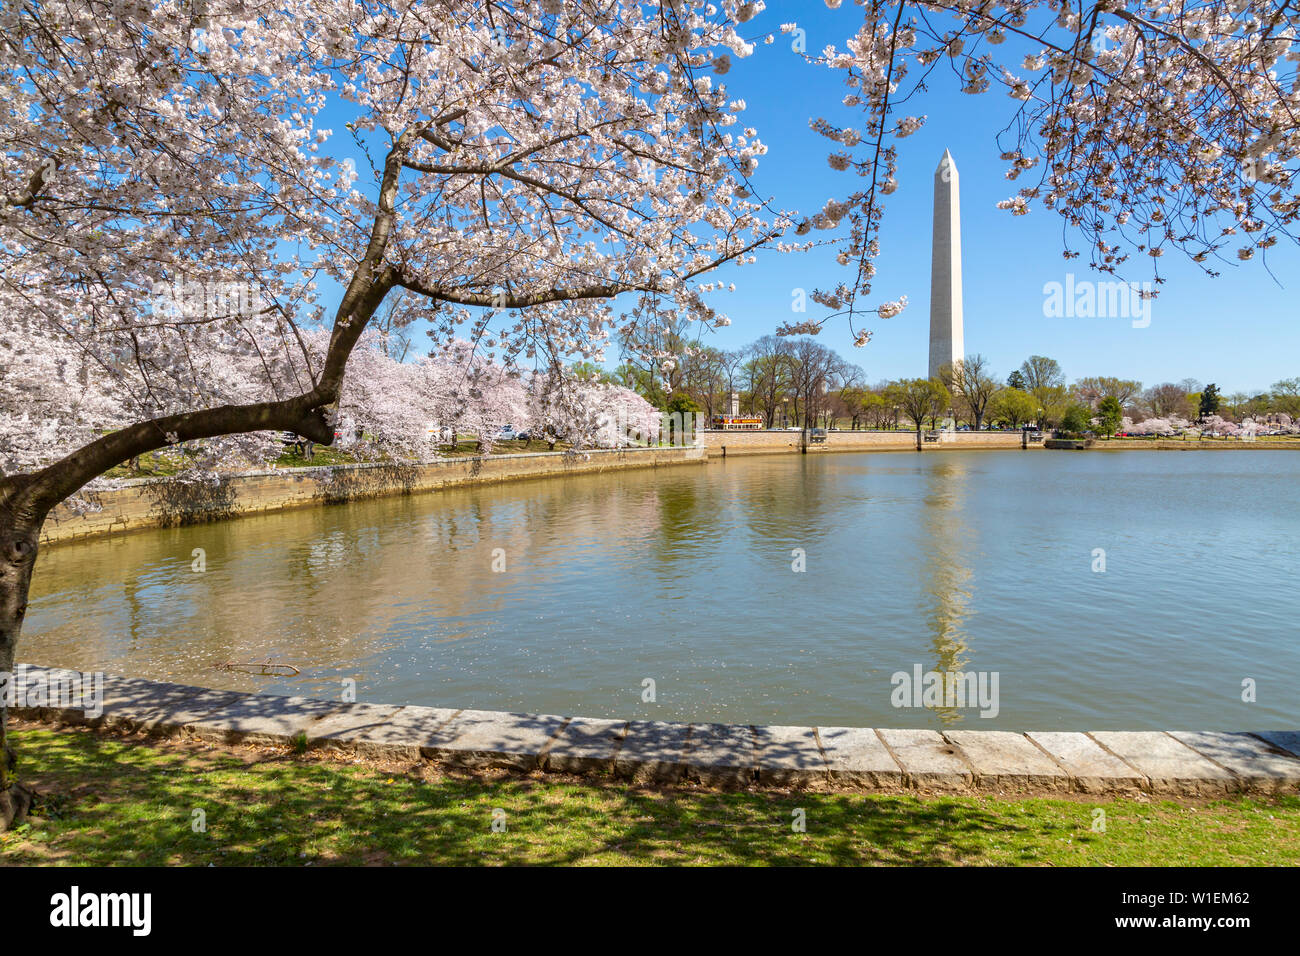 Blick auf das Washington Monument, Tidal Basin und Kirschblüte Bäume im Frühling, Washington D.C., Vereinigte Staaten von Amerika, Nordamerika Stockfoto